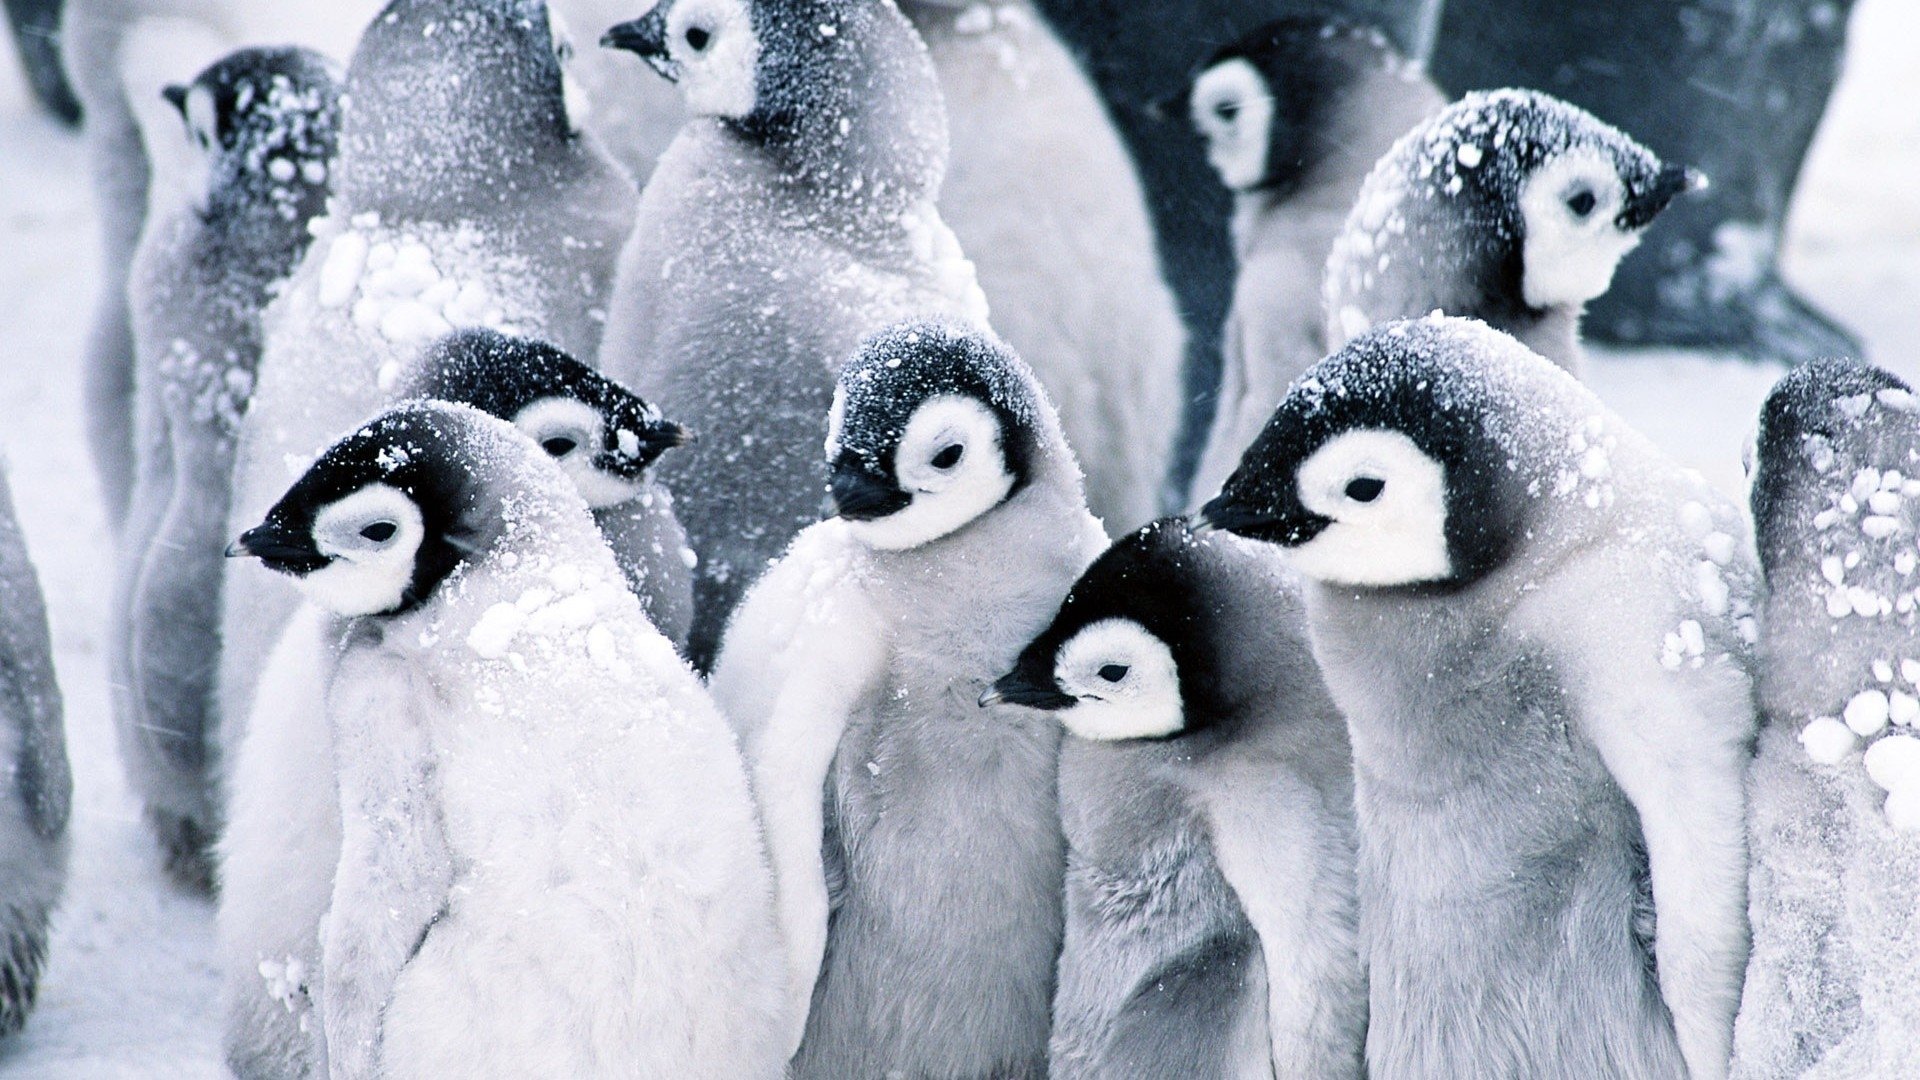 Penguin Desktops Wallpapers